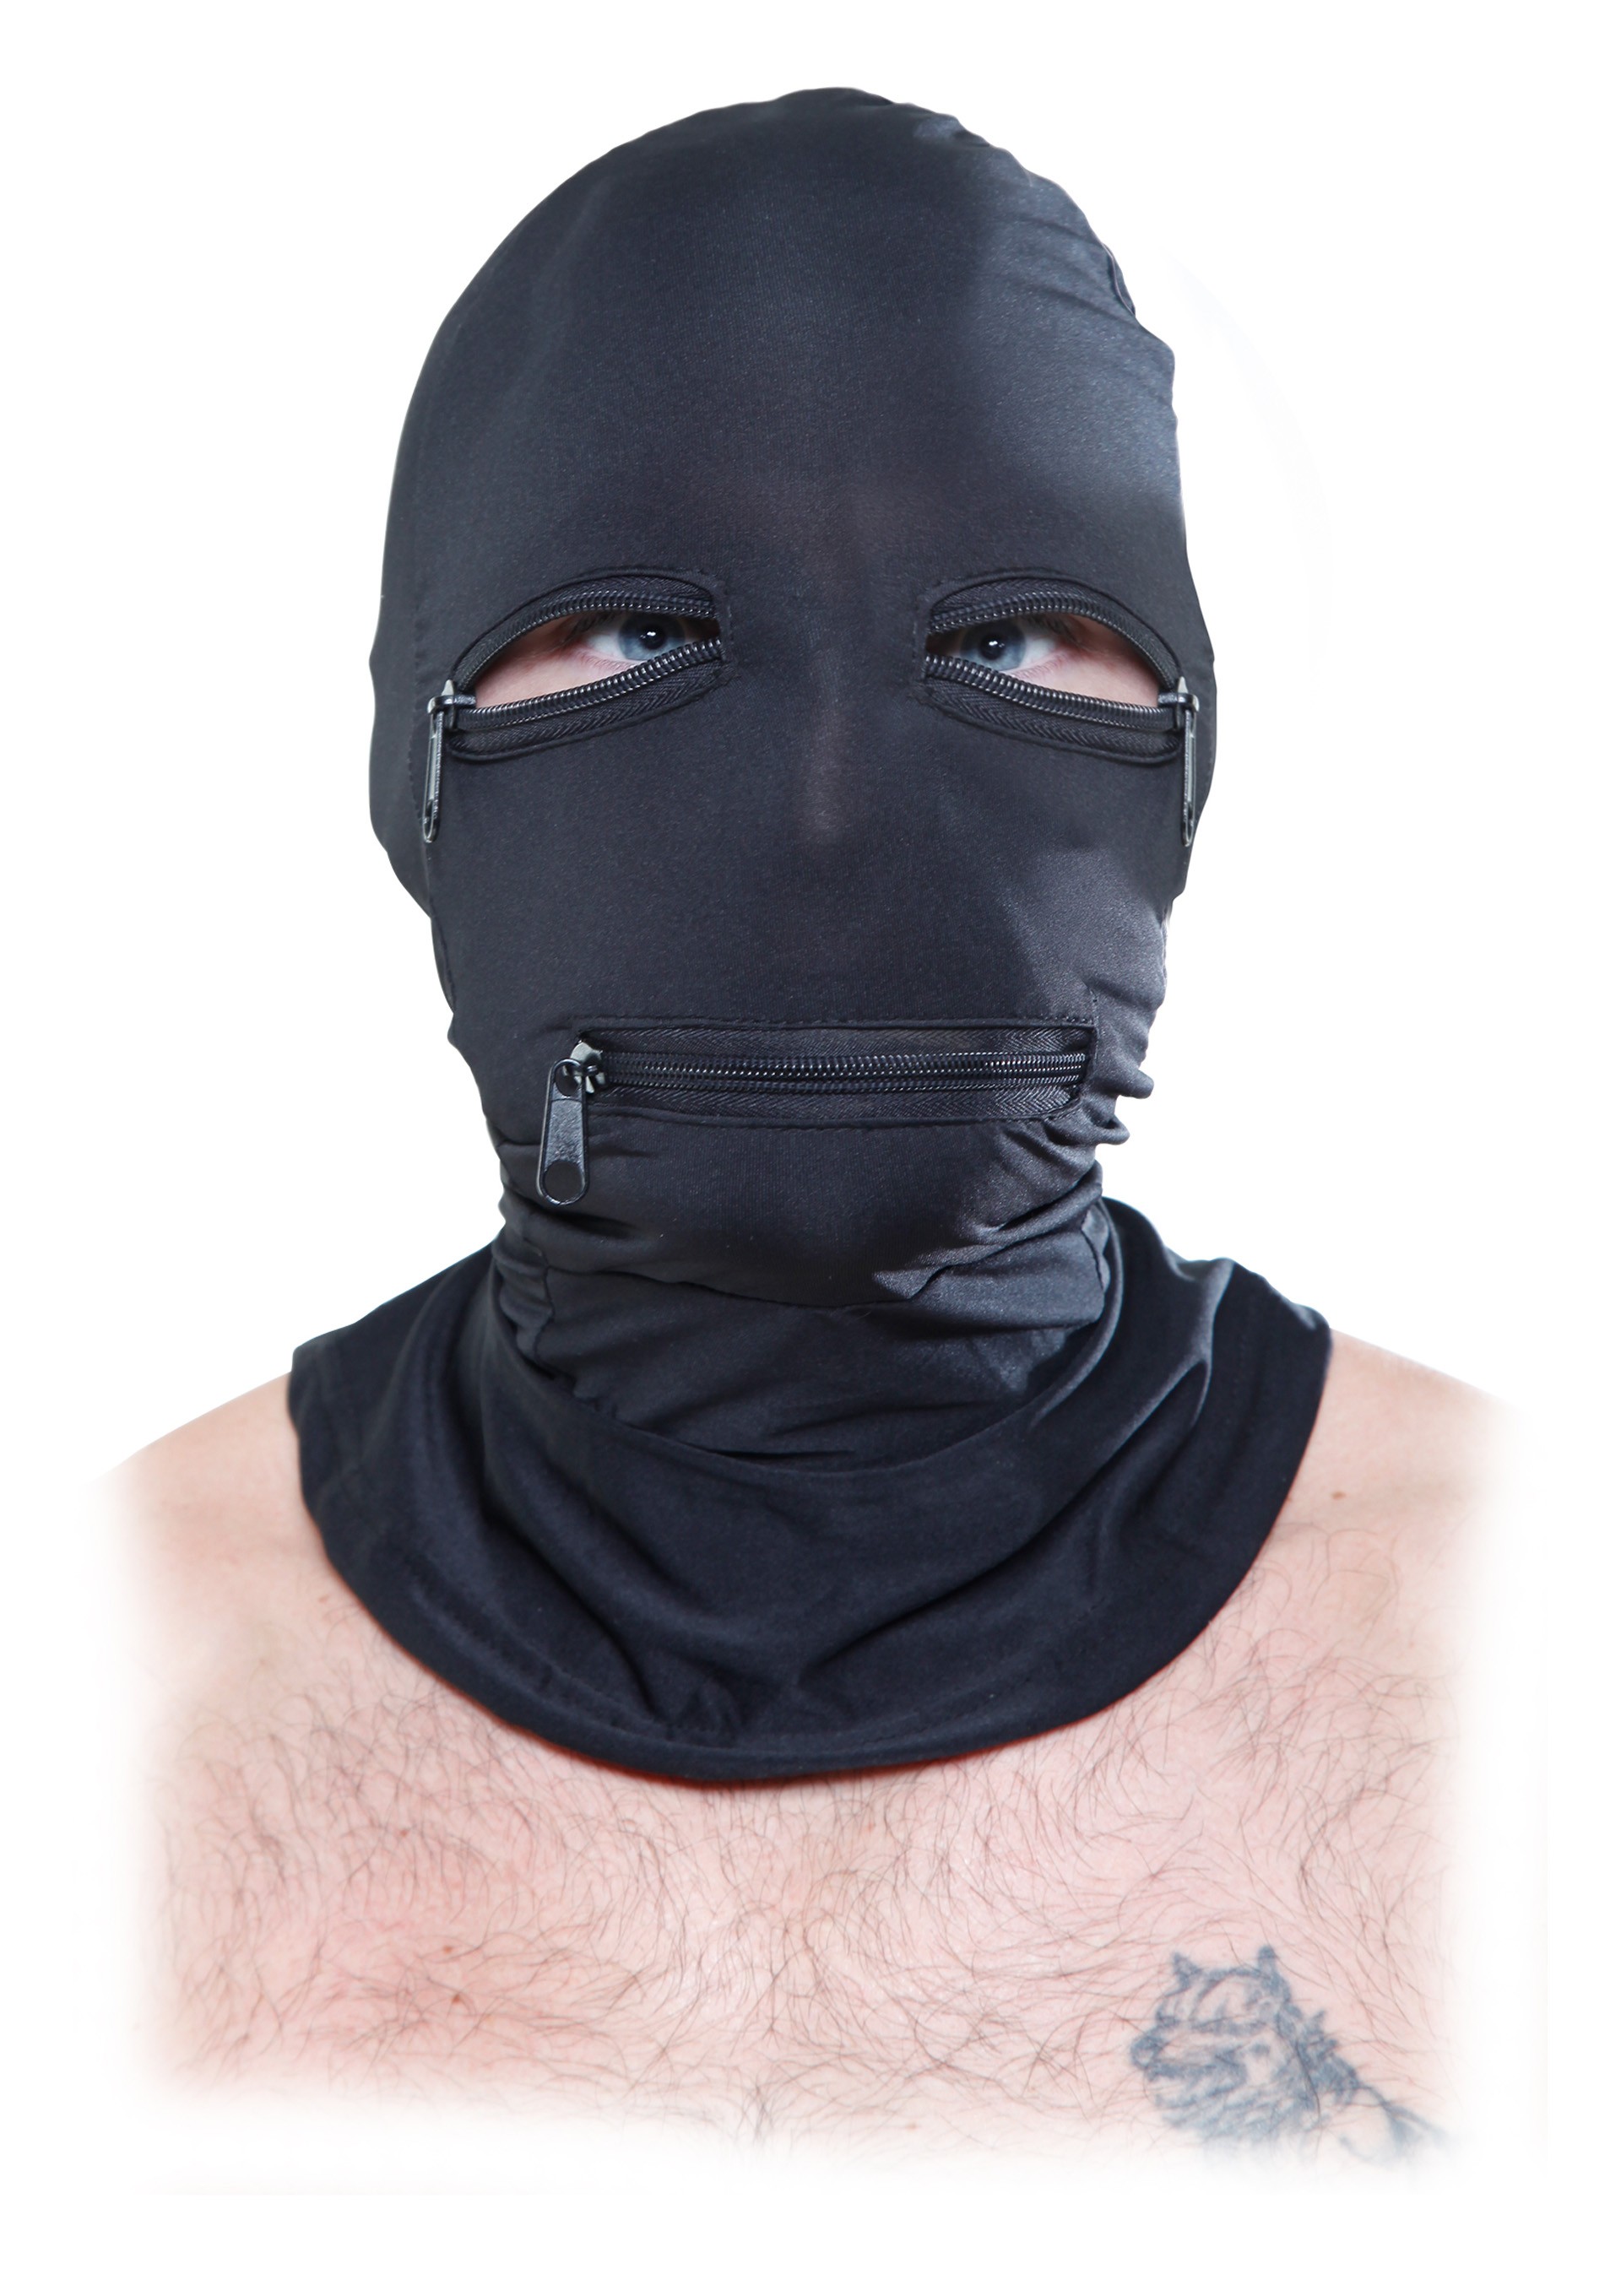 Maska z zamkami błyskawicznymi BDSM